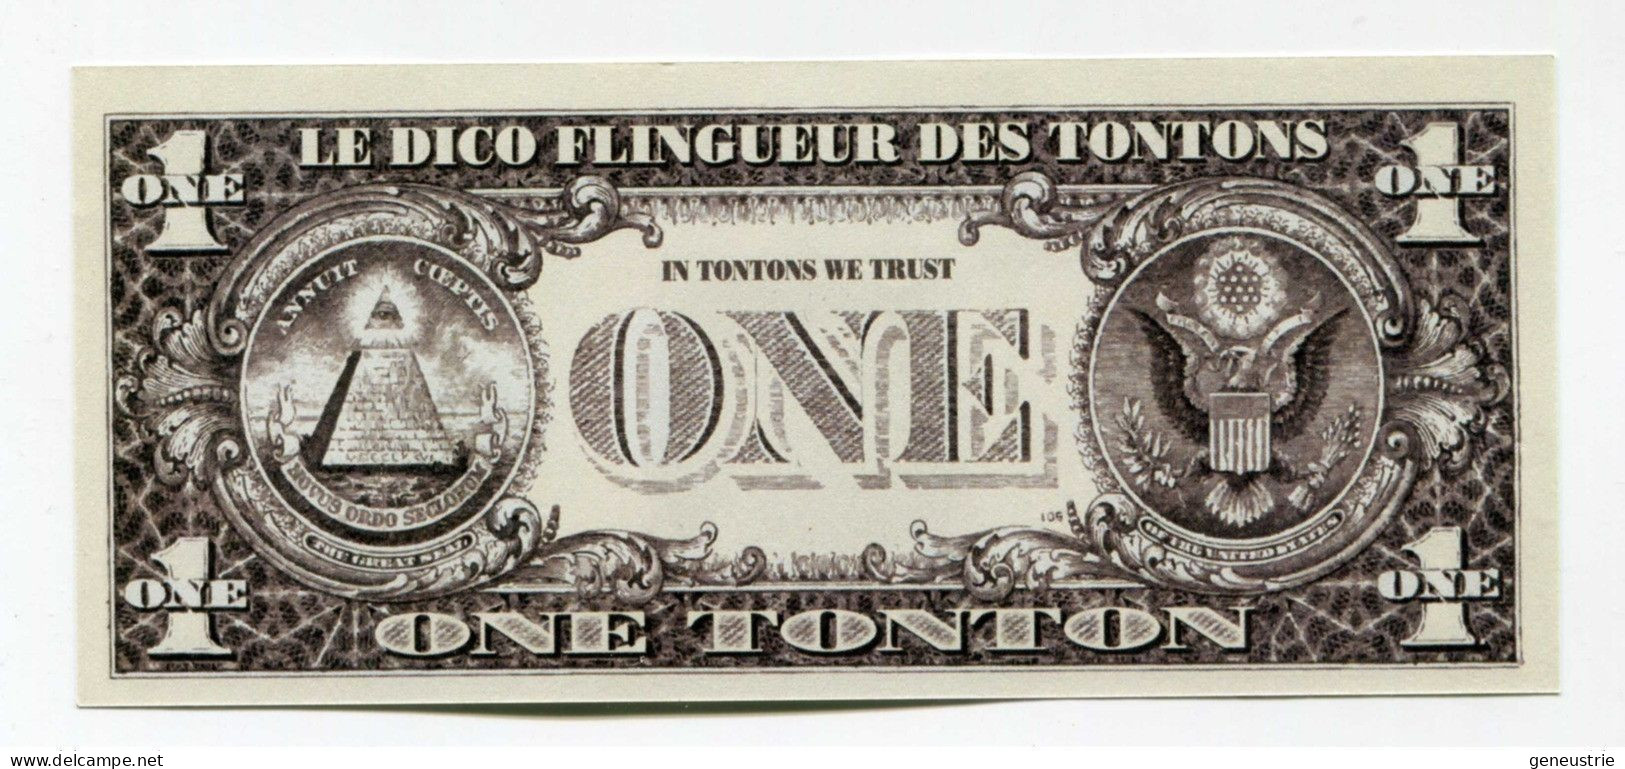 Série De 5 Billets Fantaisie Inspirés Du Dollar "One Tonton - Les Tontons Flingueurs - Rueil-Malmaison" Cinéma - Specimen